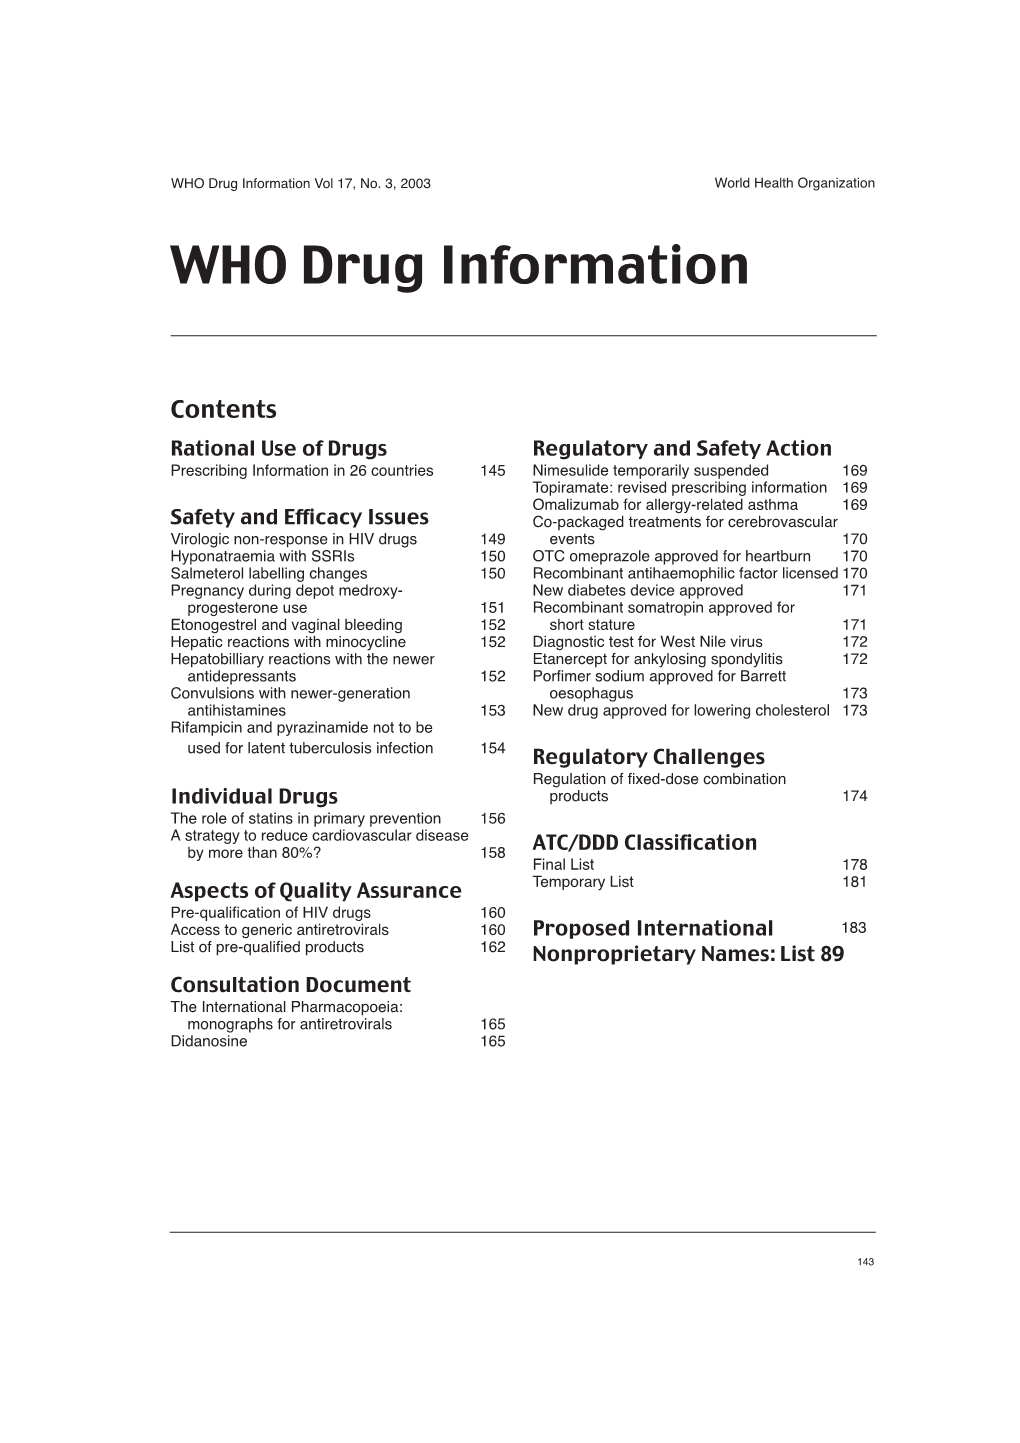 WHO Drug Information Vol 17, No